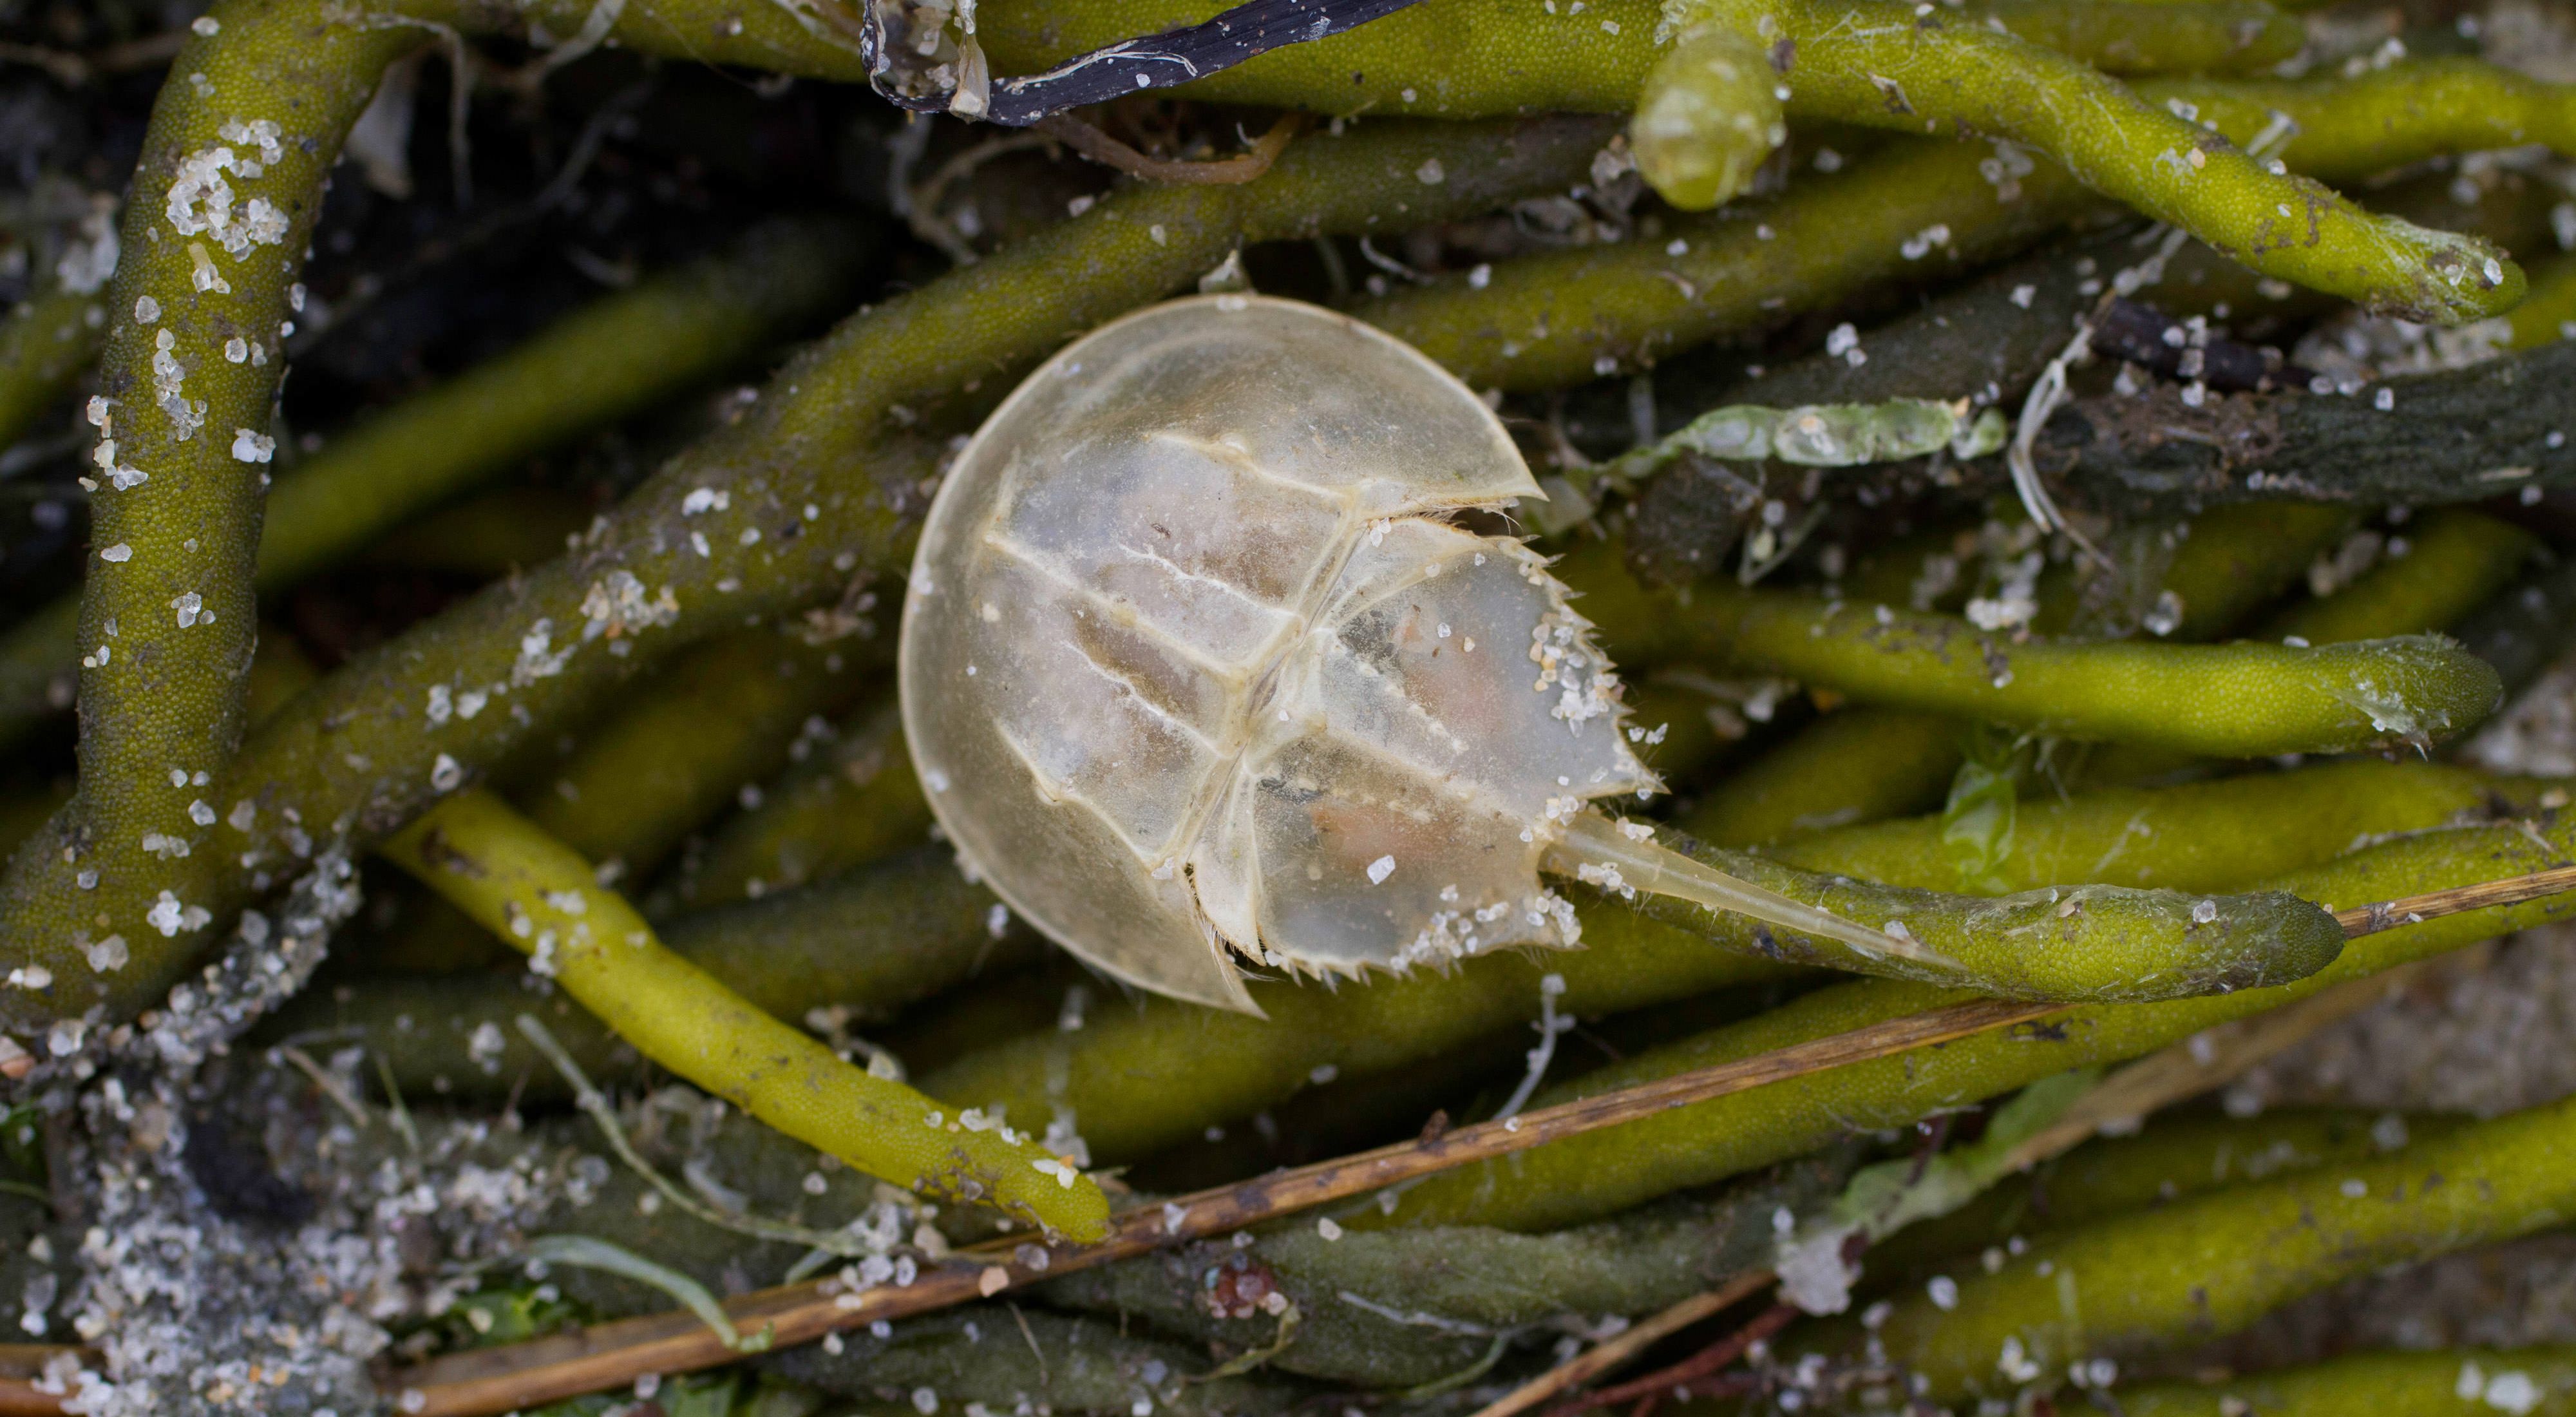 a translucent horseshoe crab on seaweed